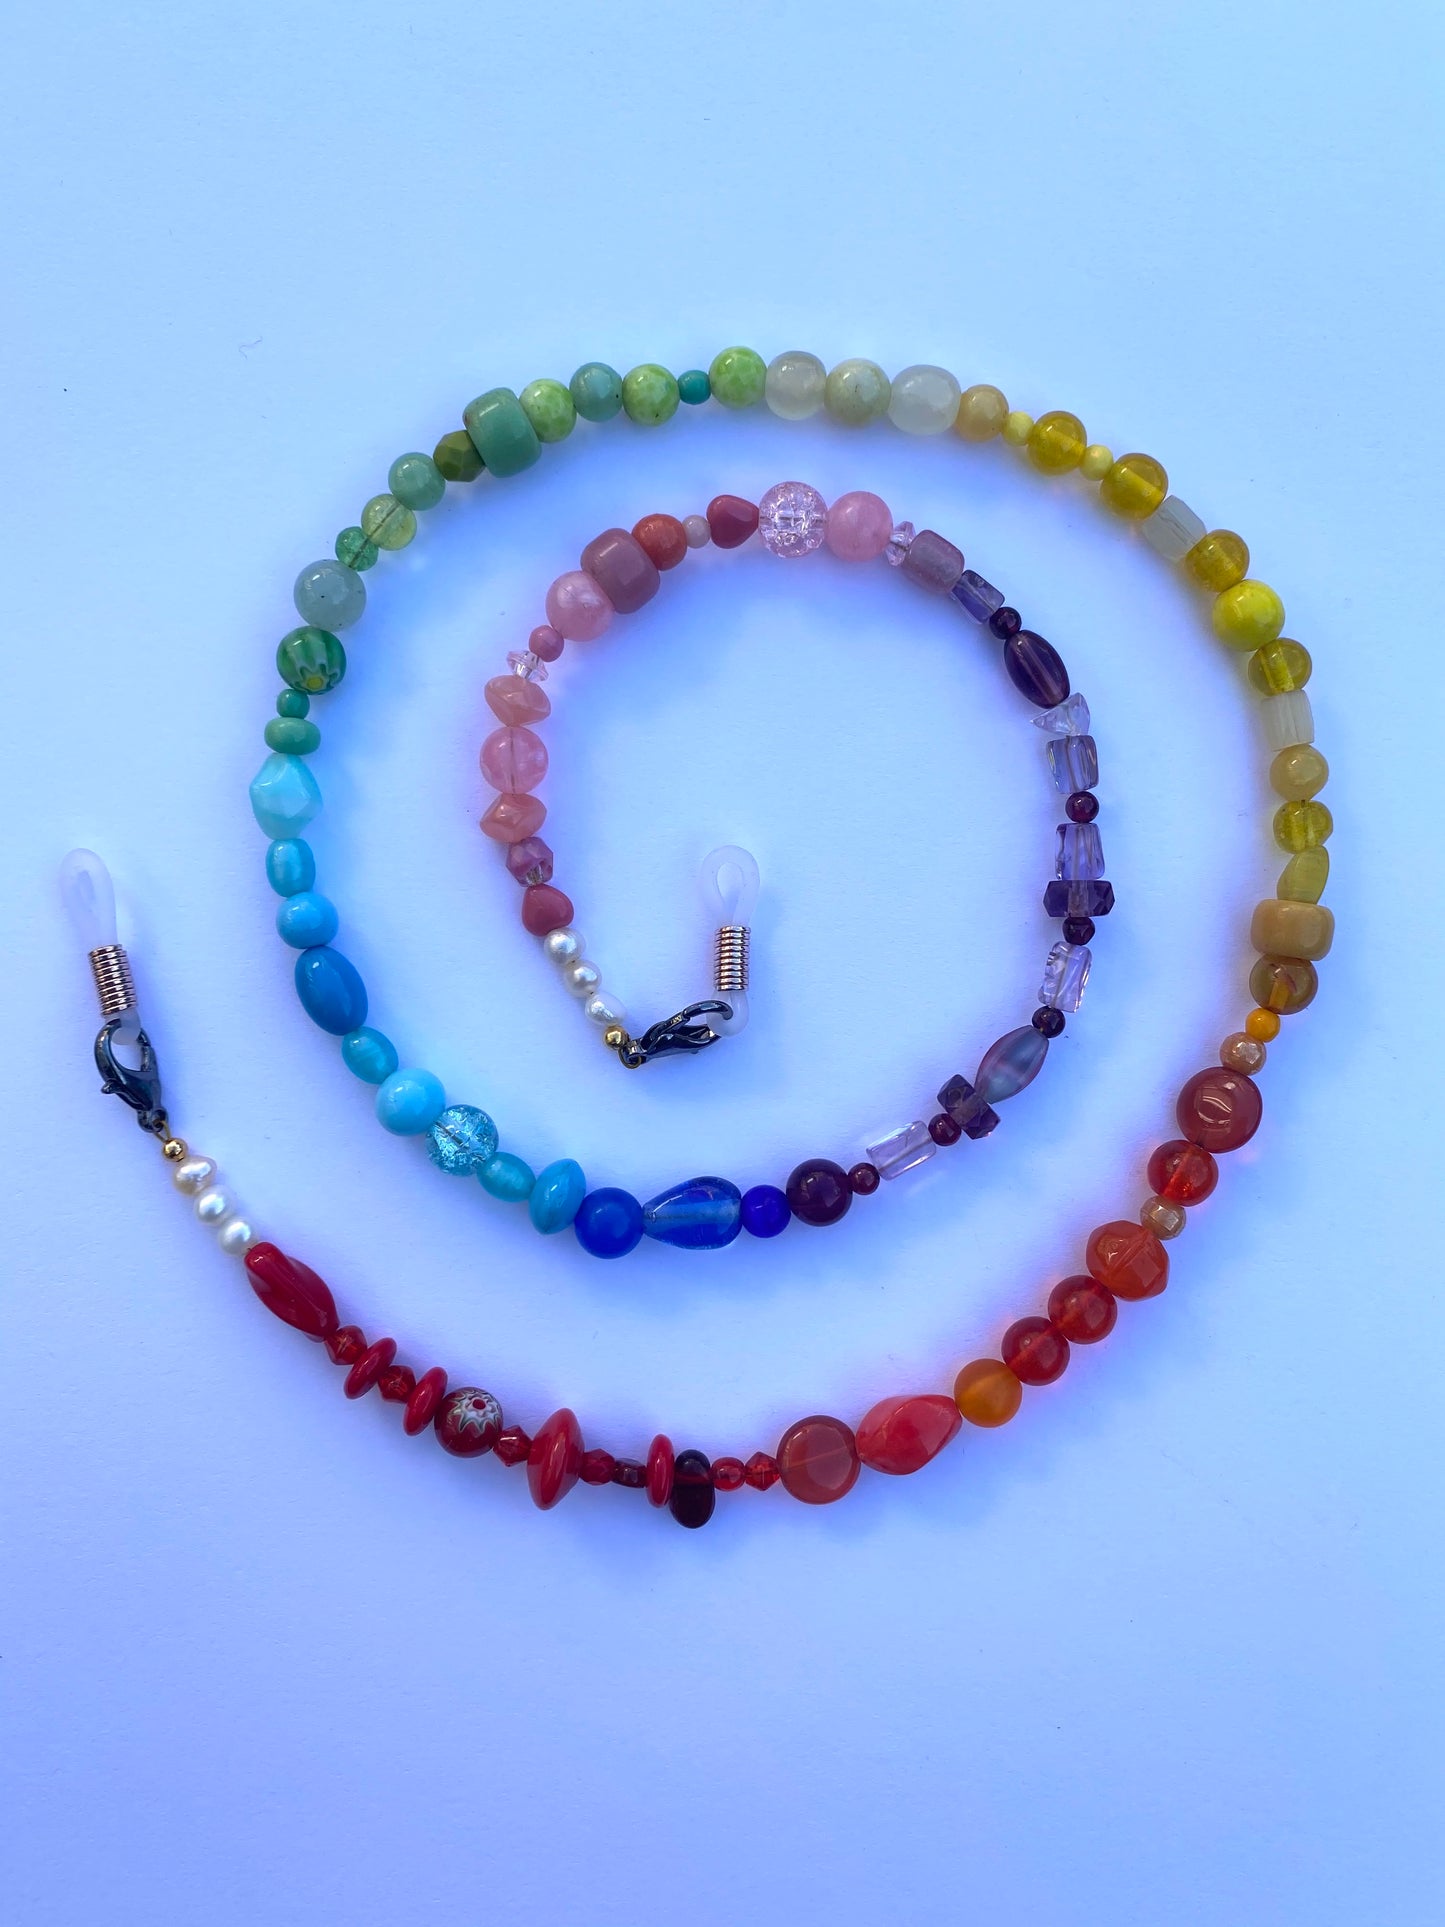 Rainbow Glasses Chain